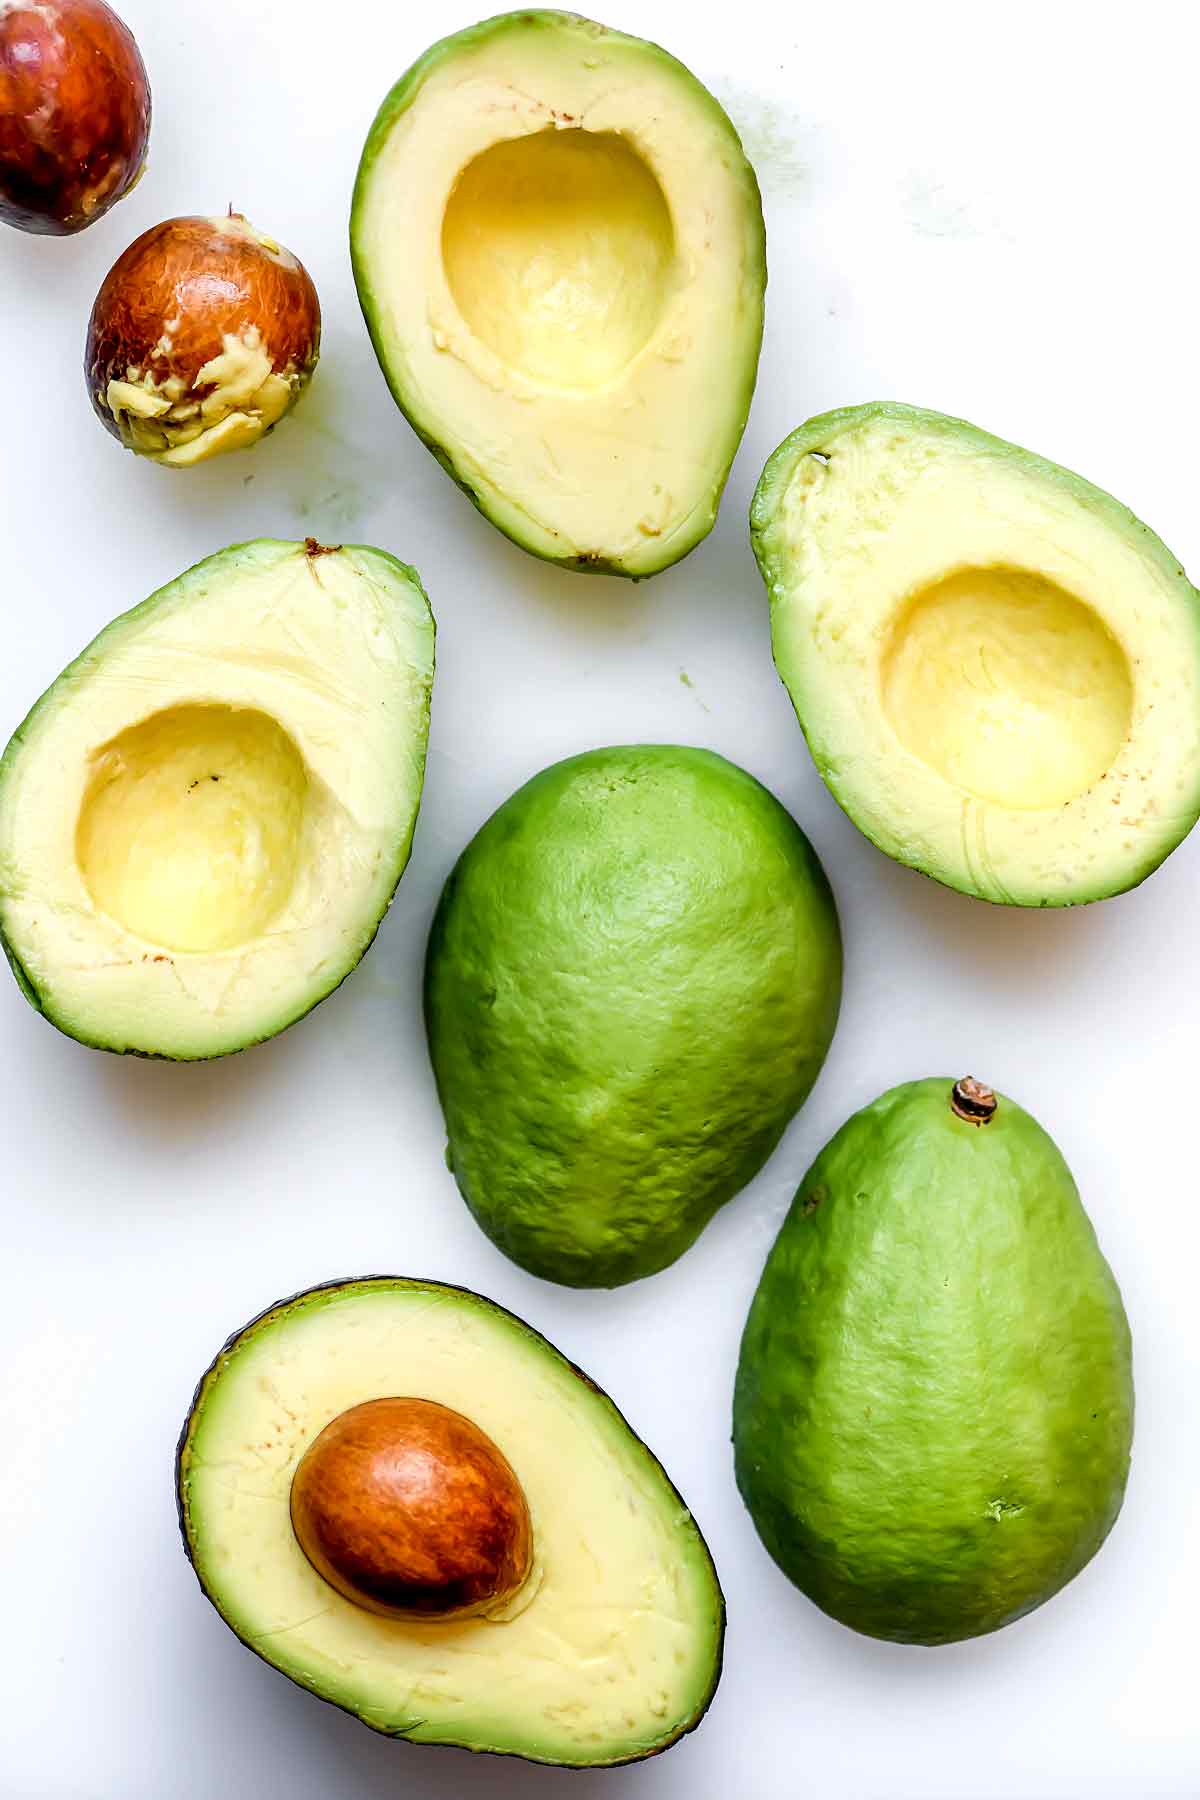 Avocado Tips - How to Prepare and Store Avocado